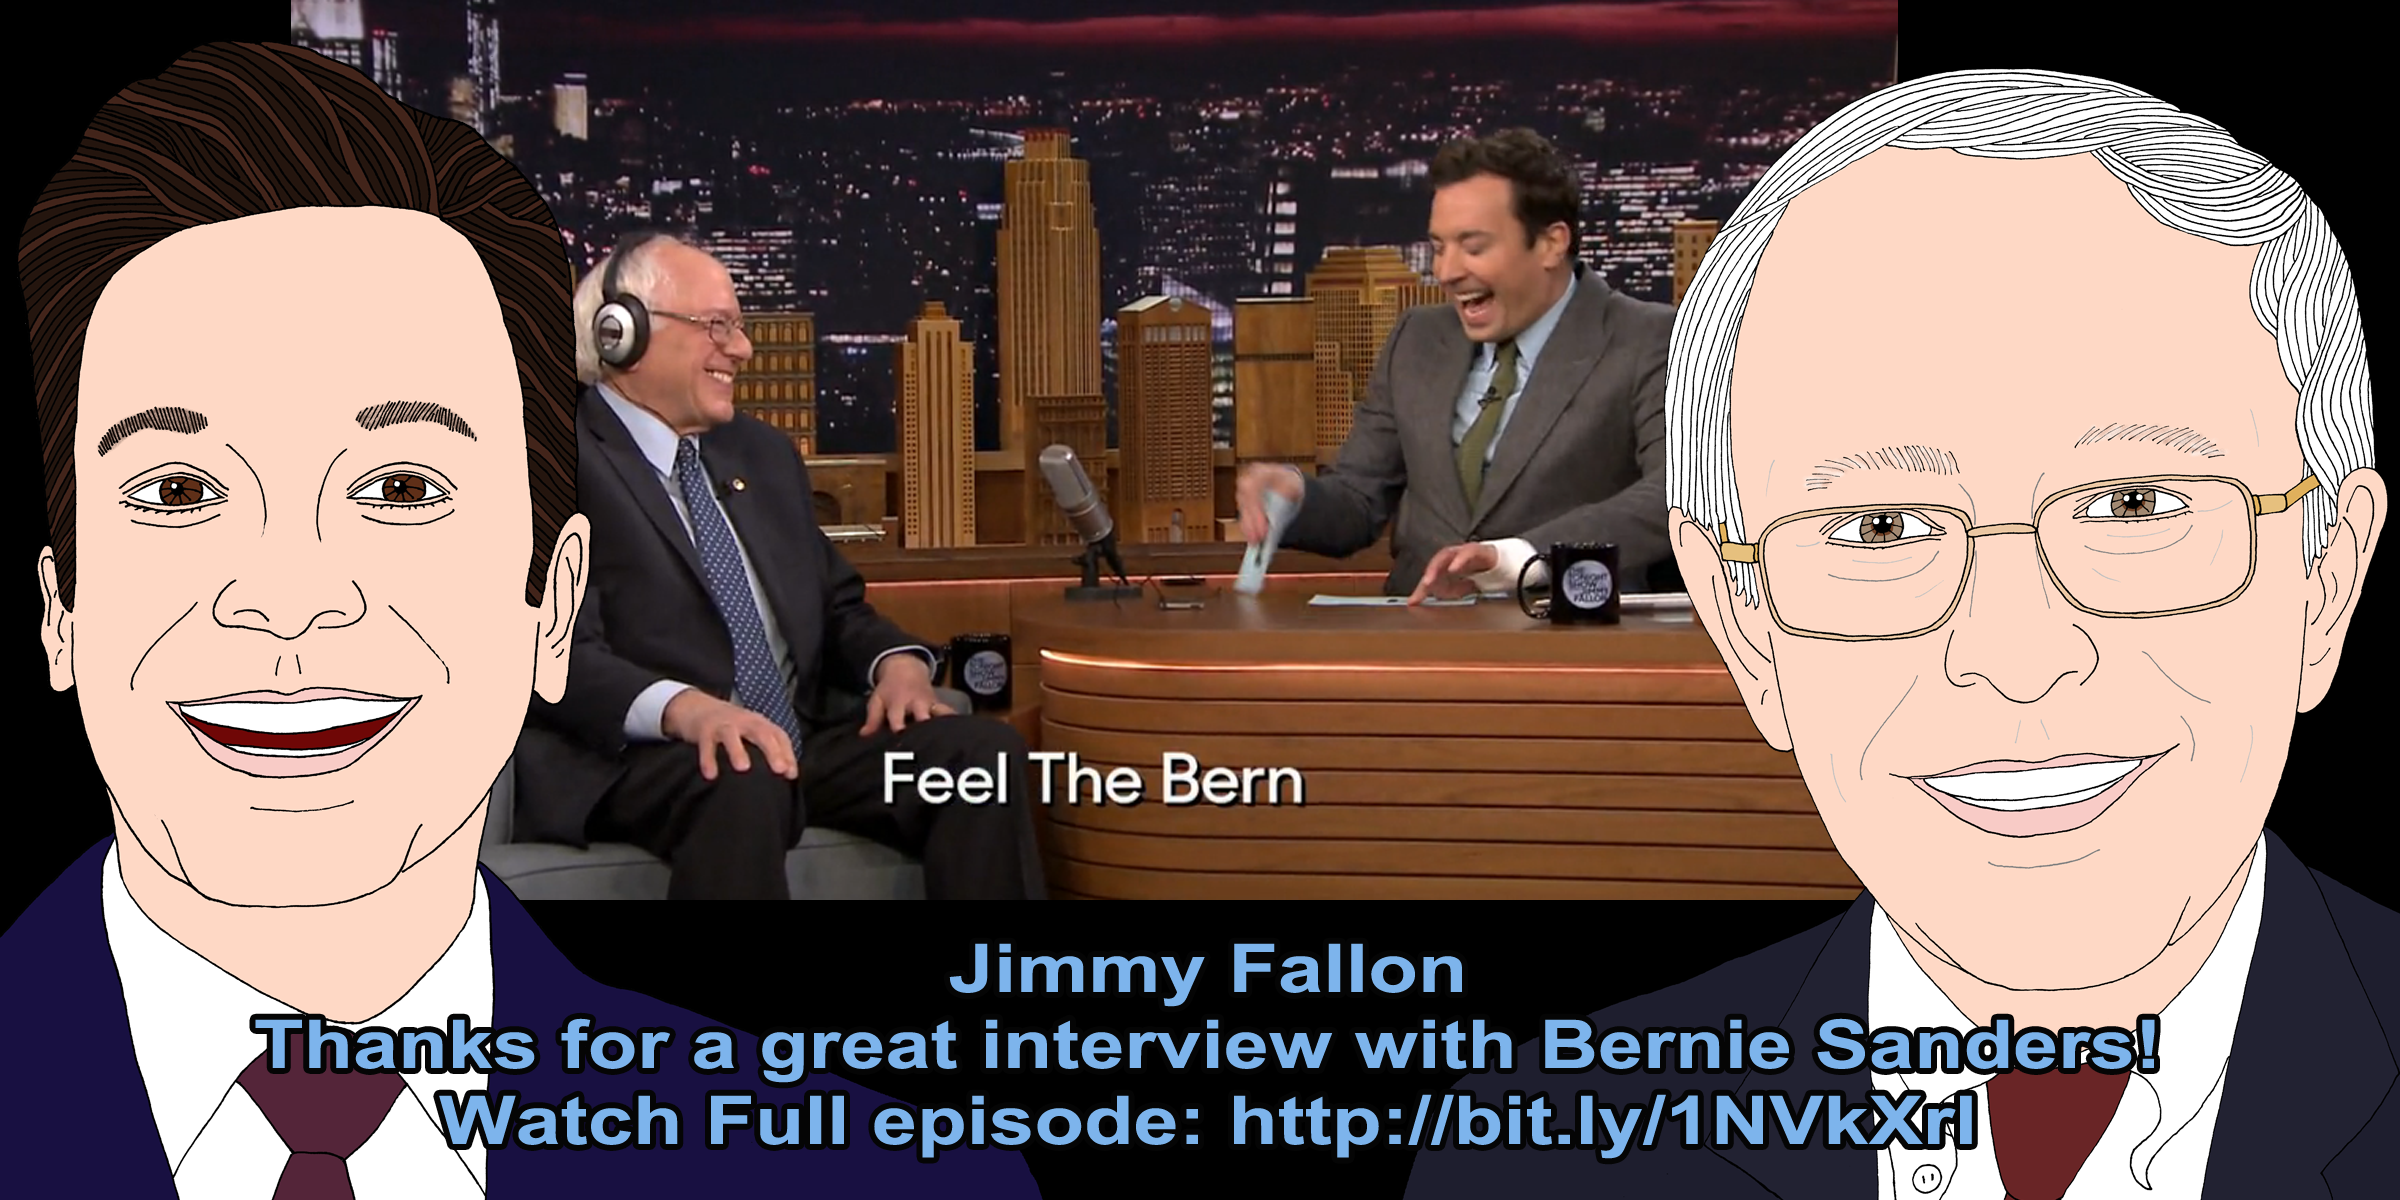 Jimmy Fallon for Bernie Sanders